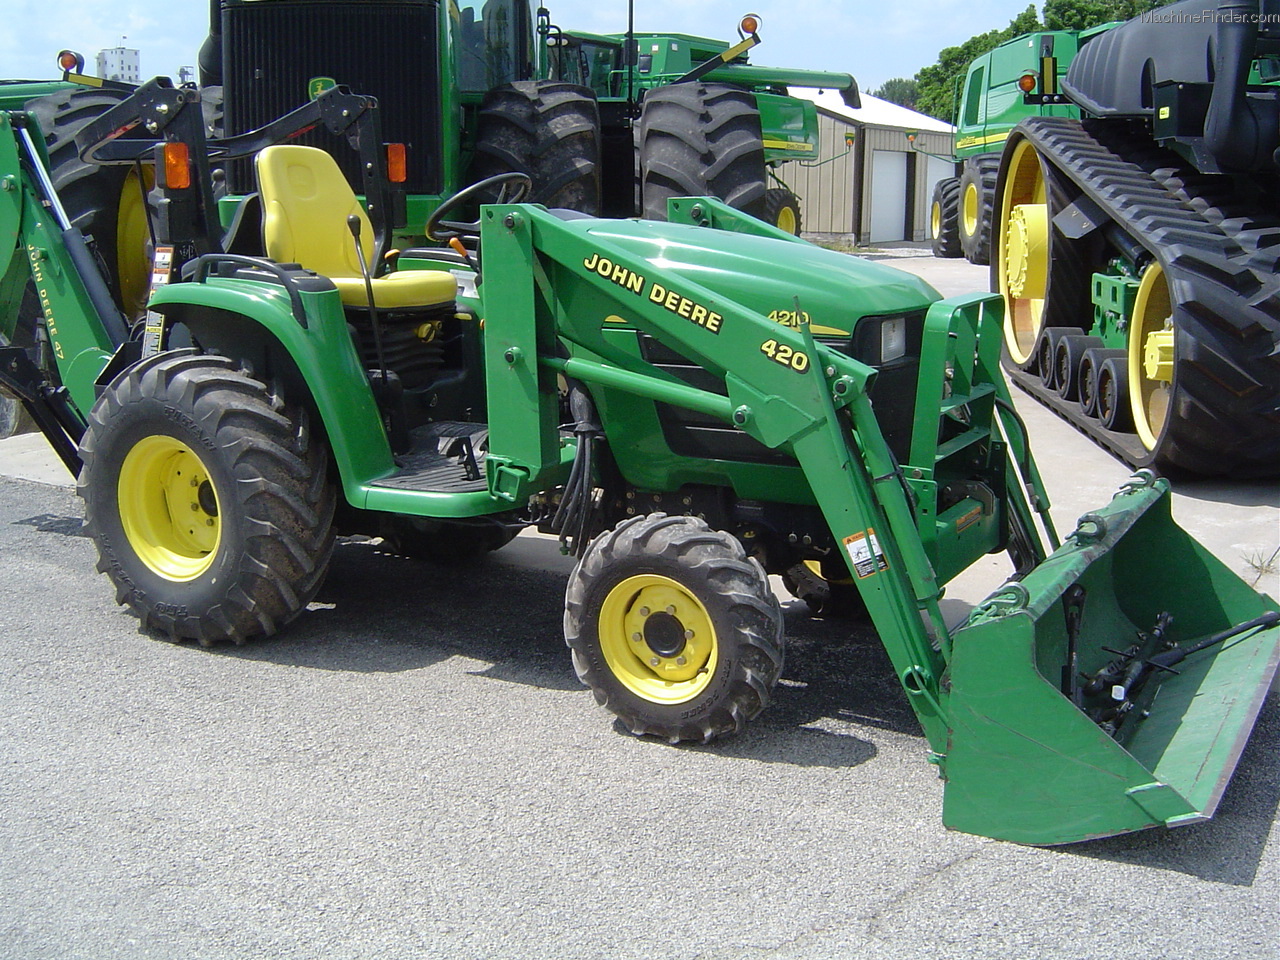 2003 John Deere 4210 Tractors - Compact (1-40hp.) - John Deere ...